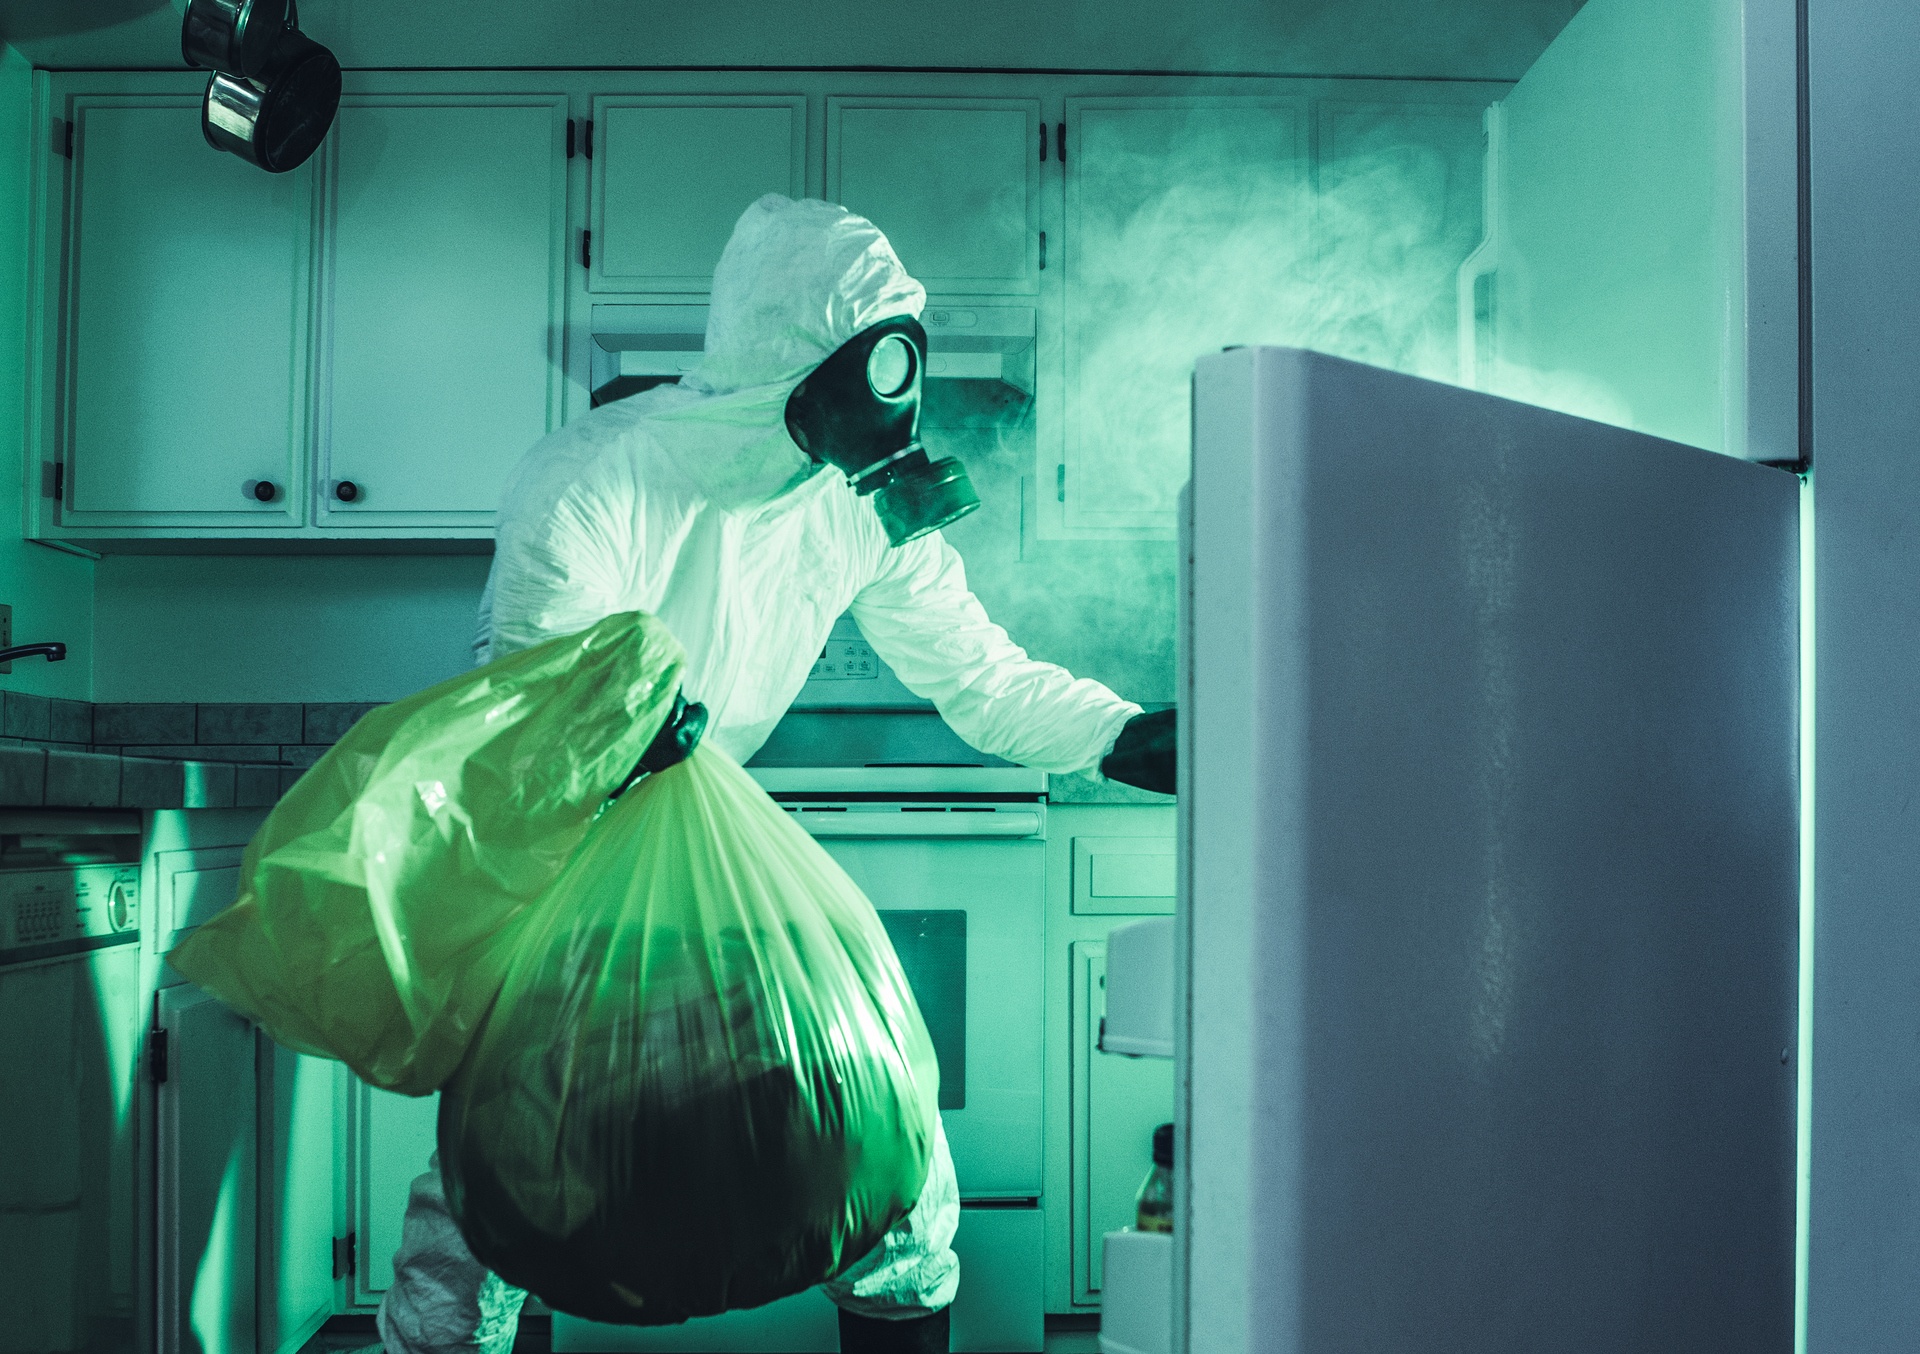 Man In Hazmat Suit Cleaning Refrigerator